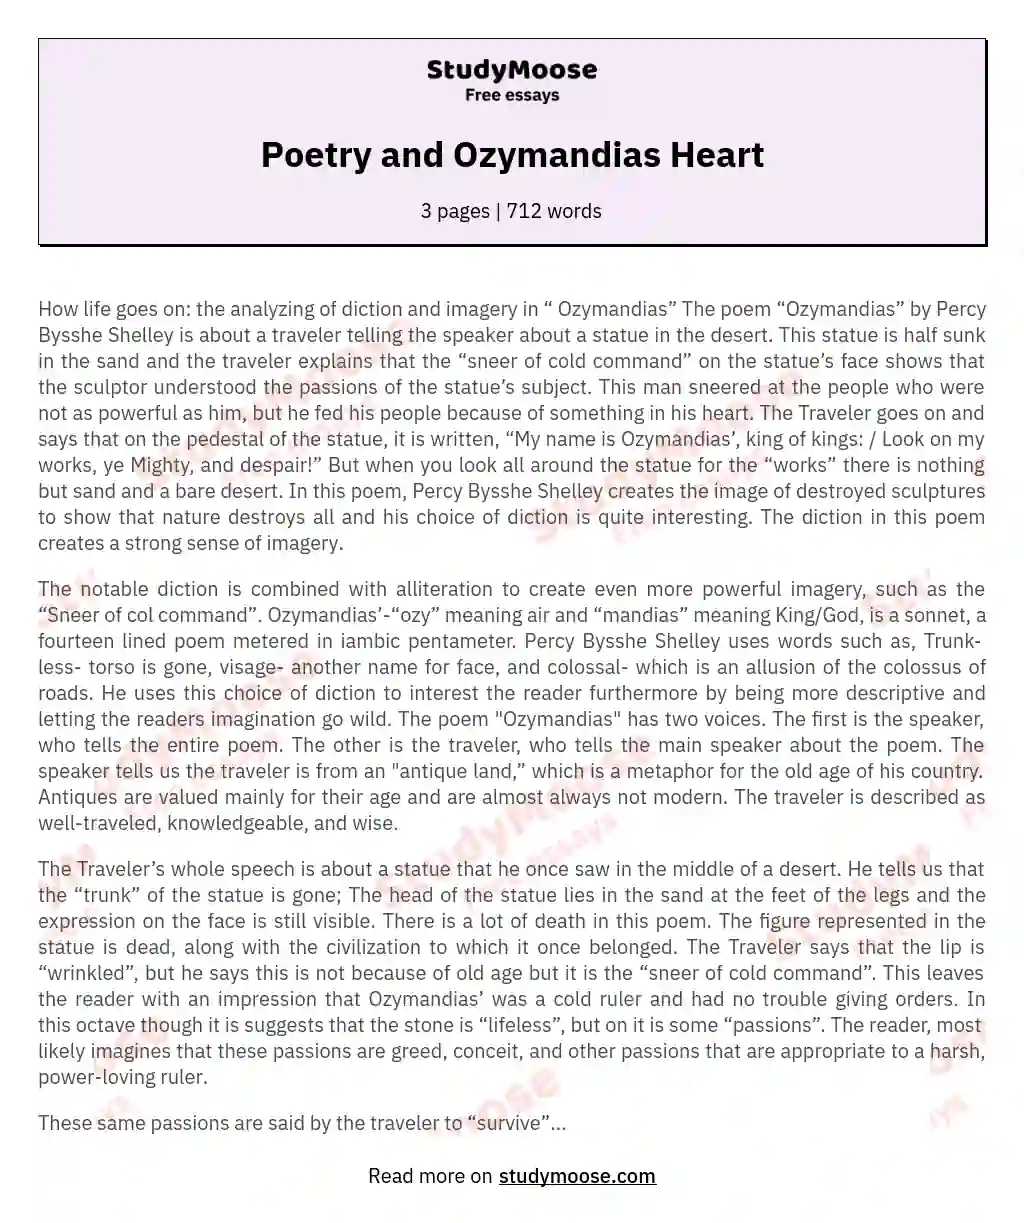 Poetry and Ozymandias Heart essay